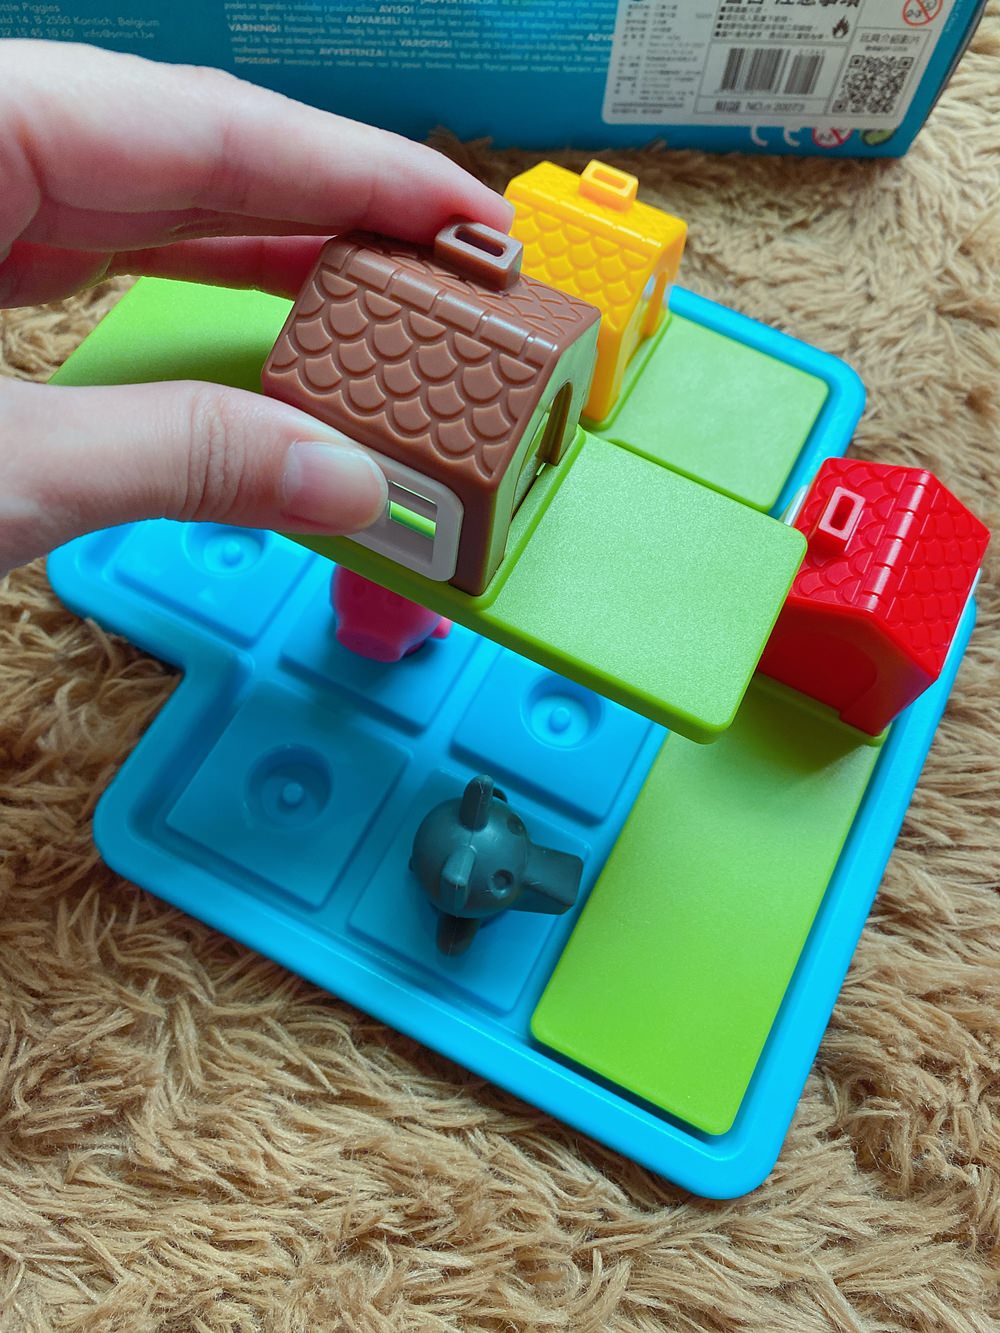 比利時smart games兒童桌遊推薦三隻小豬玩法說明